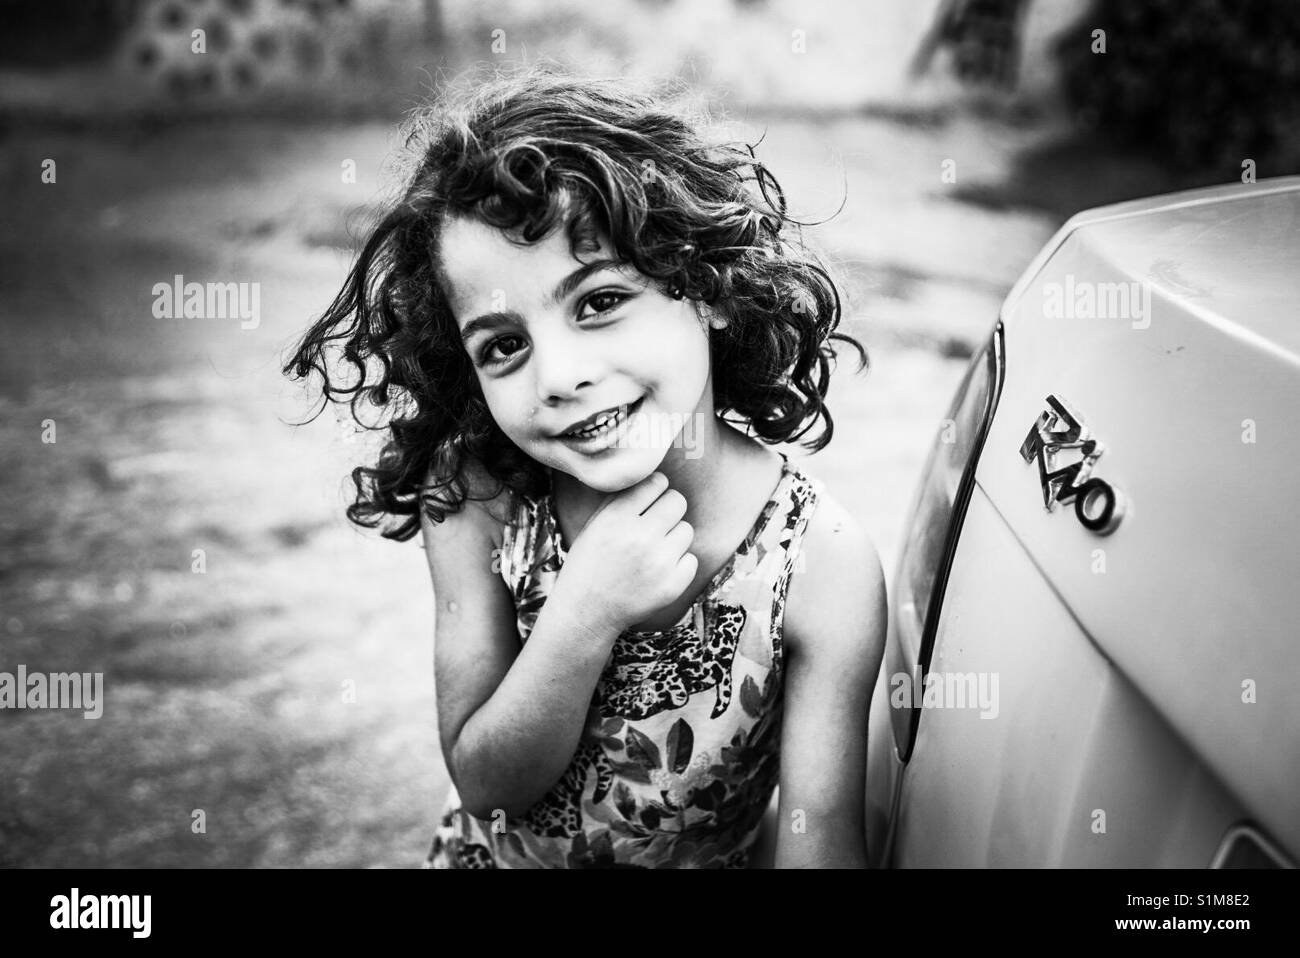 Une fille de réfugiés palestiniens dans le camp de Aïda, Bethléem, Palestine. Banque D'Images